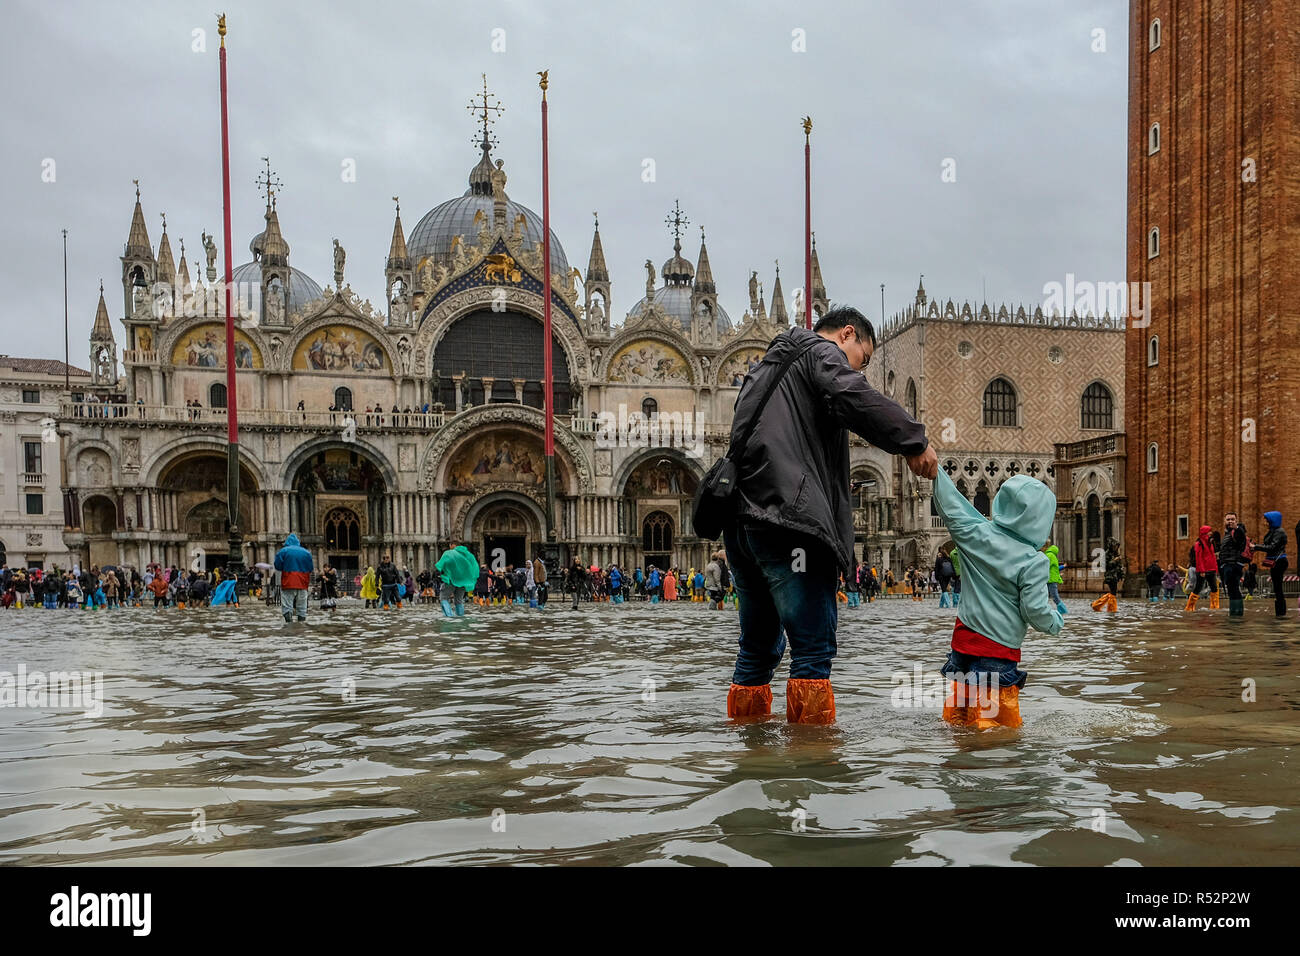 Venedig, Italien. 29. Oktober 2018. Papa begleitet seinen Sohn den überschwemmten St. Mark Square zu sehen. Dies war die höchste Flut des Jahrhunderts. Diese hohe t Stockfoto